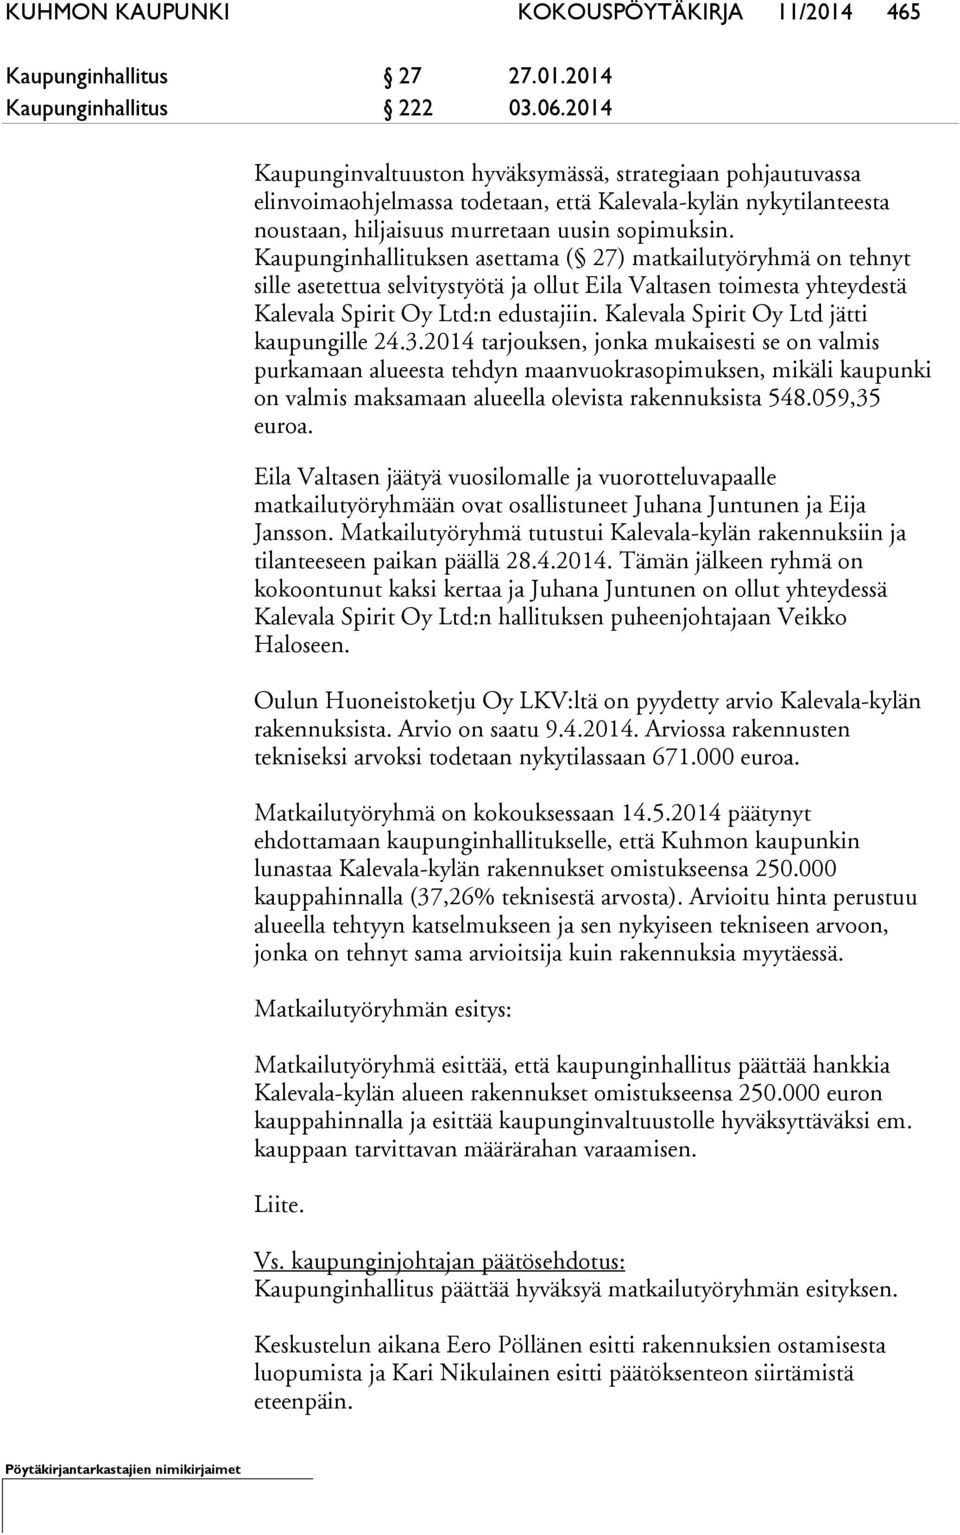 Kaupunginhallituksen asettama ( 27) matkailutyöryhmä on tehnyt sille asetettua selvitystyötä ja ollut Eila Valtasen toimesta yhteydestä Kalevala Spirit Oy Ltd:n edustajiin.